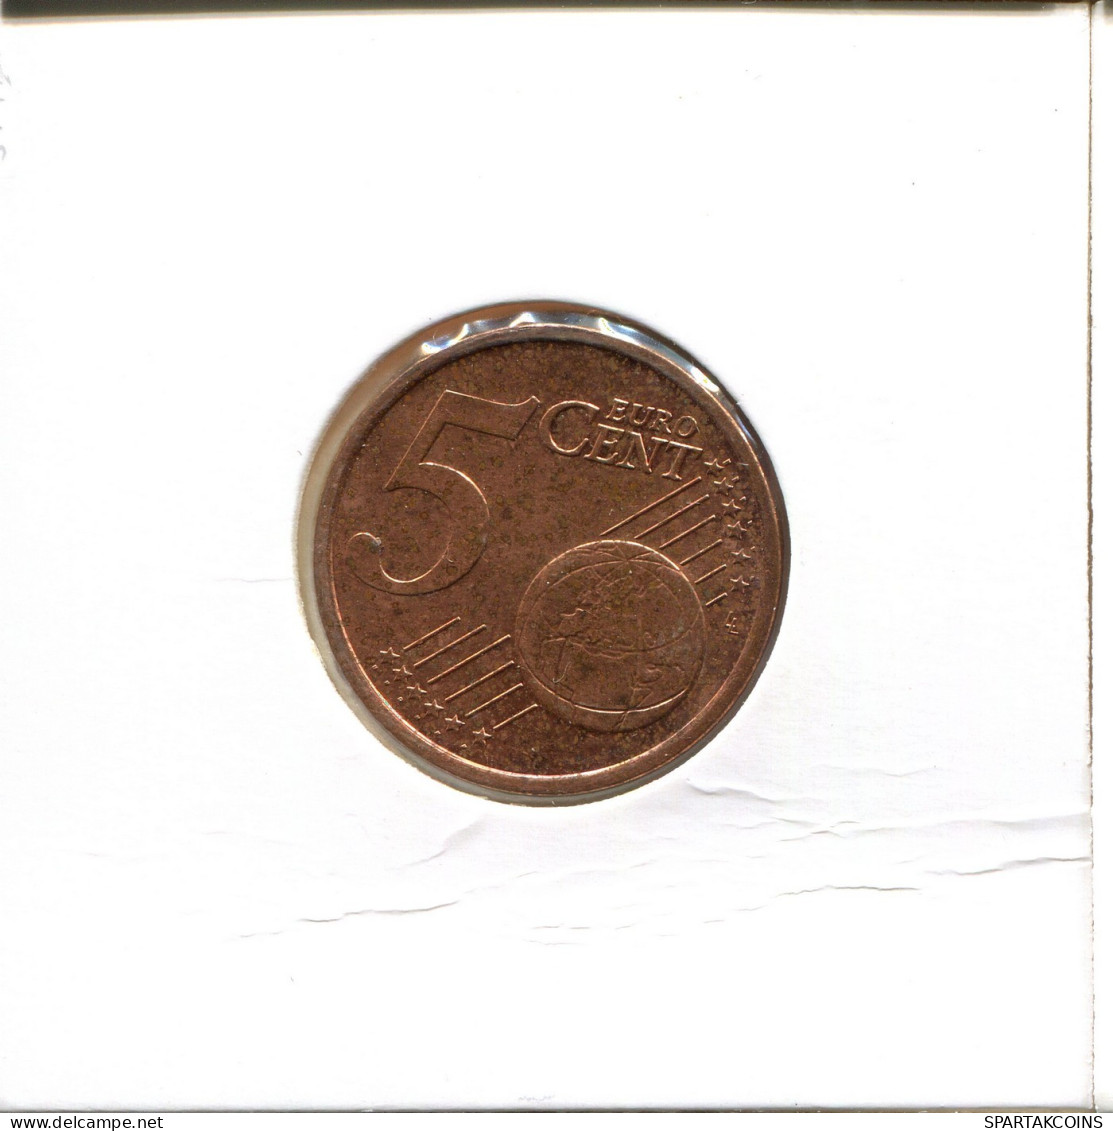 5 EURO CENTS 2004 FRANCE Coin Coin #EU461.U.A - France